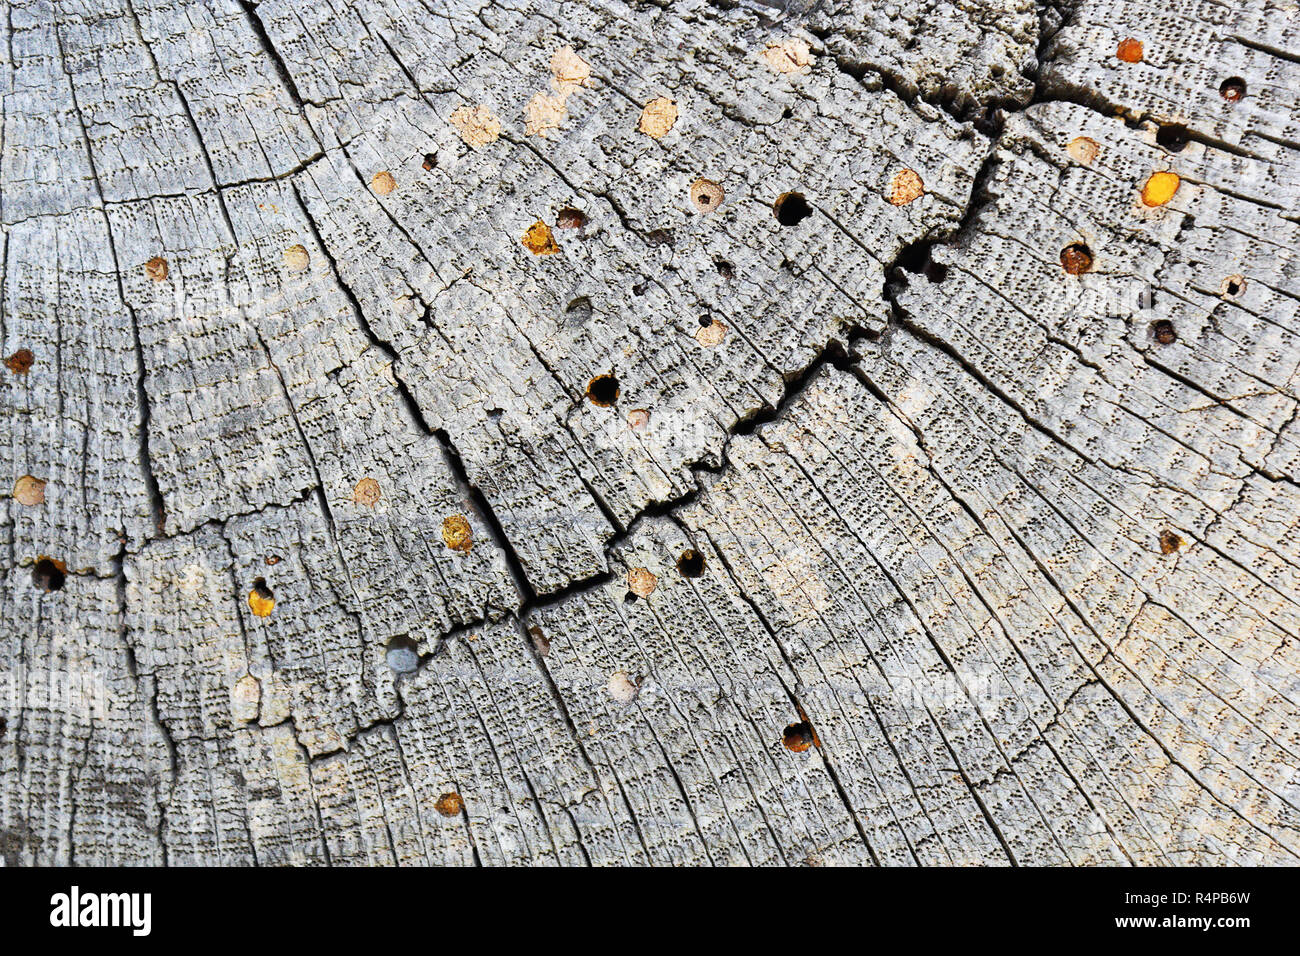 Holz Bohrer Angriff auf alten Holzbalken, Textur (Querschnitt) mit jährlichen Ringe Stockfoto